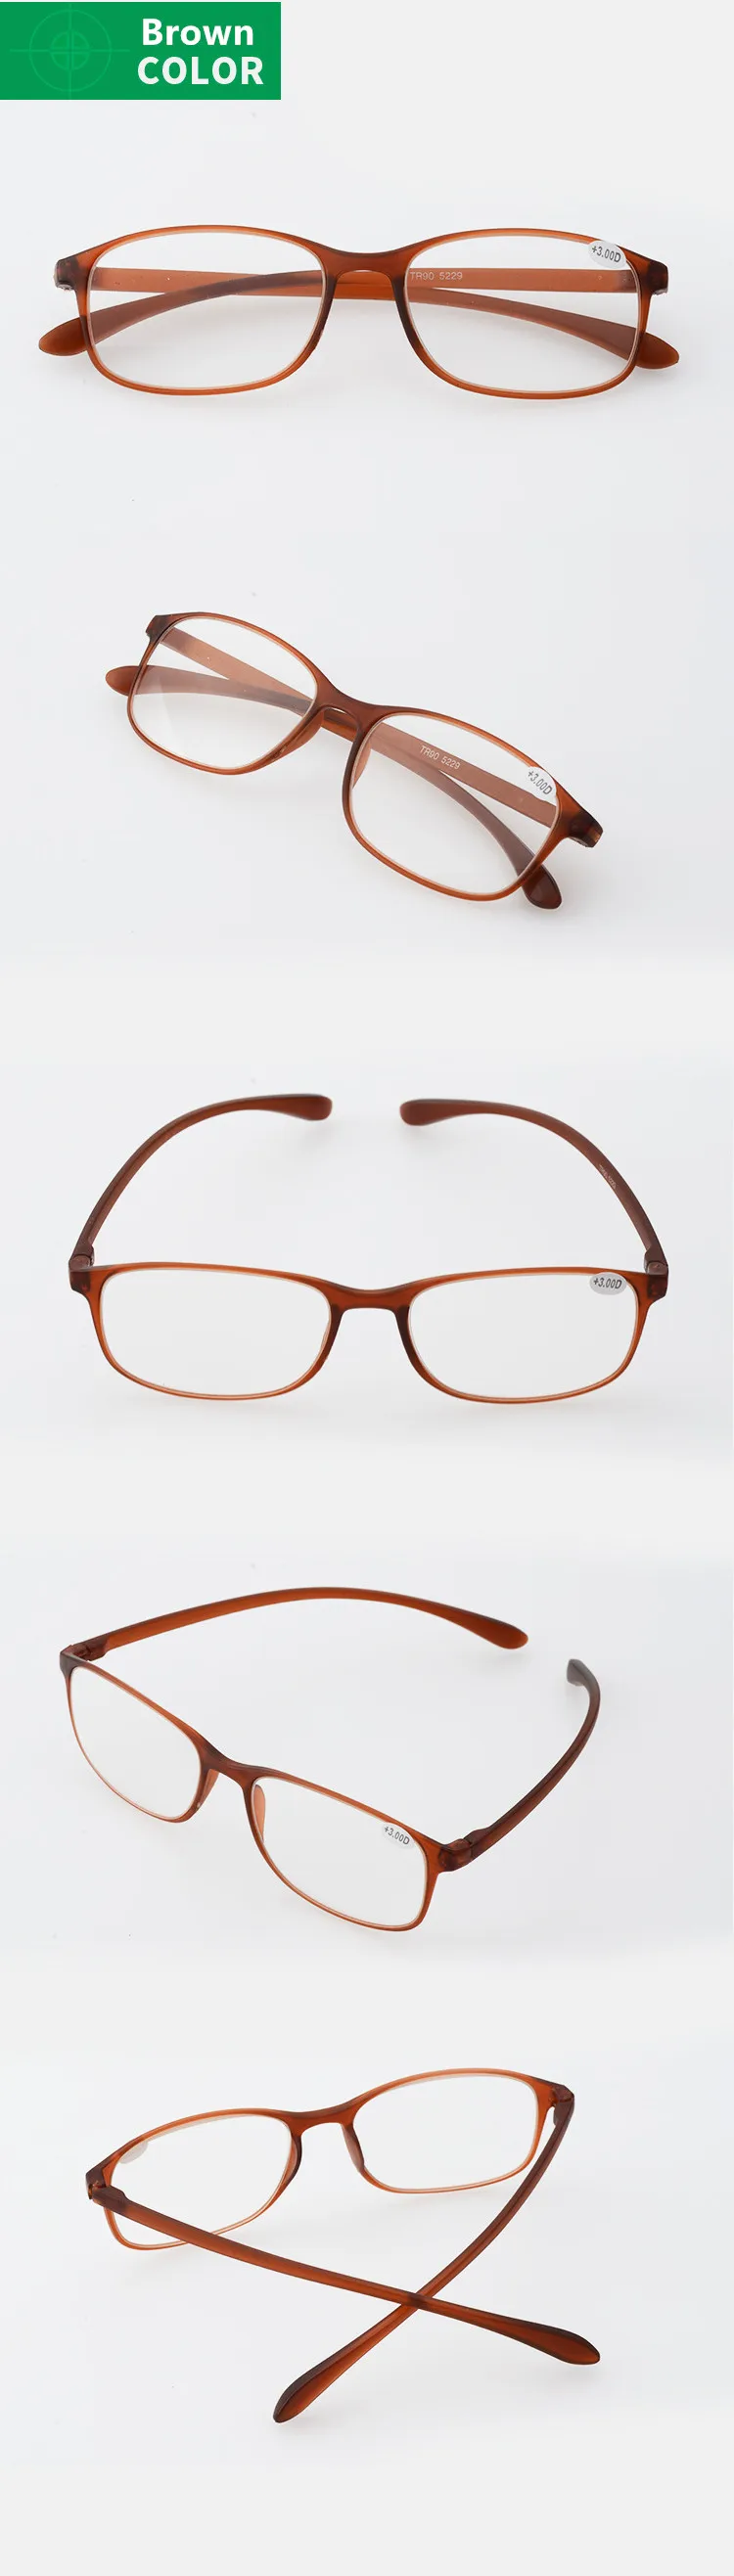 Модные очки для чтения женские ультра-легкий материал очки TR90 рамки считывания очки 1.5 мужские очки читатель очков